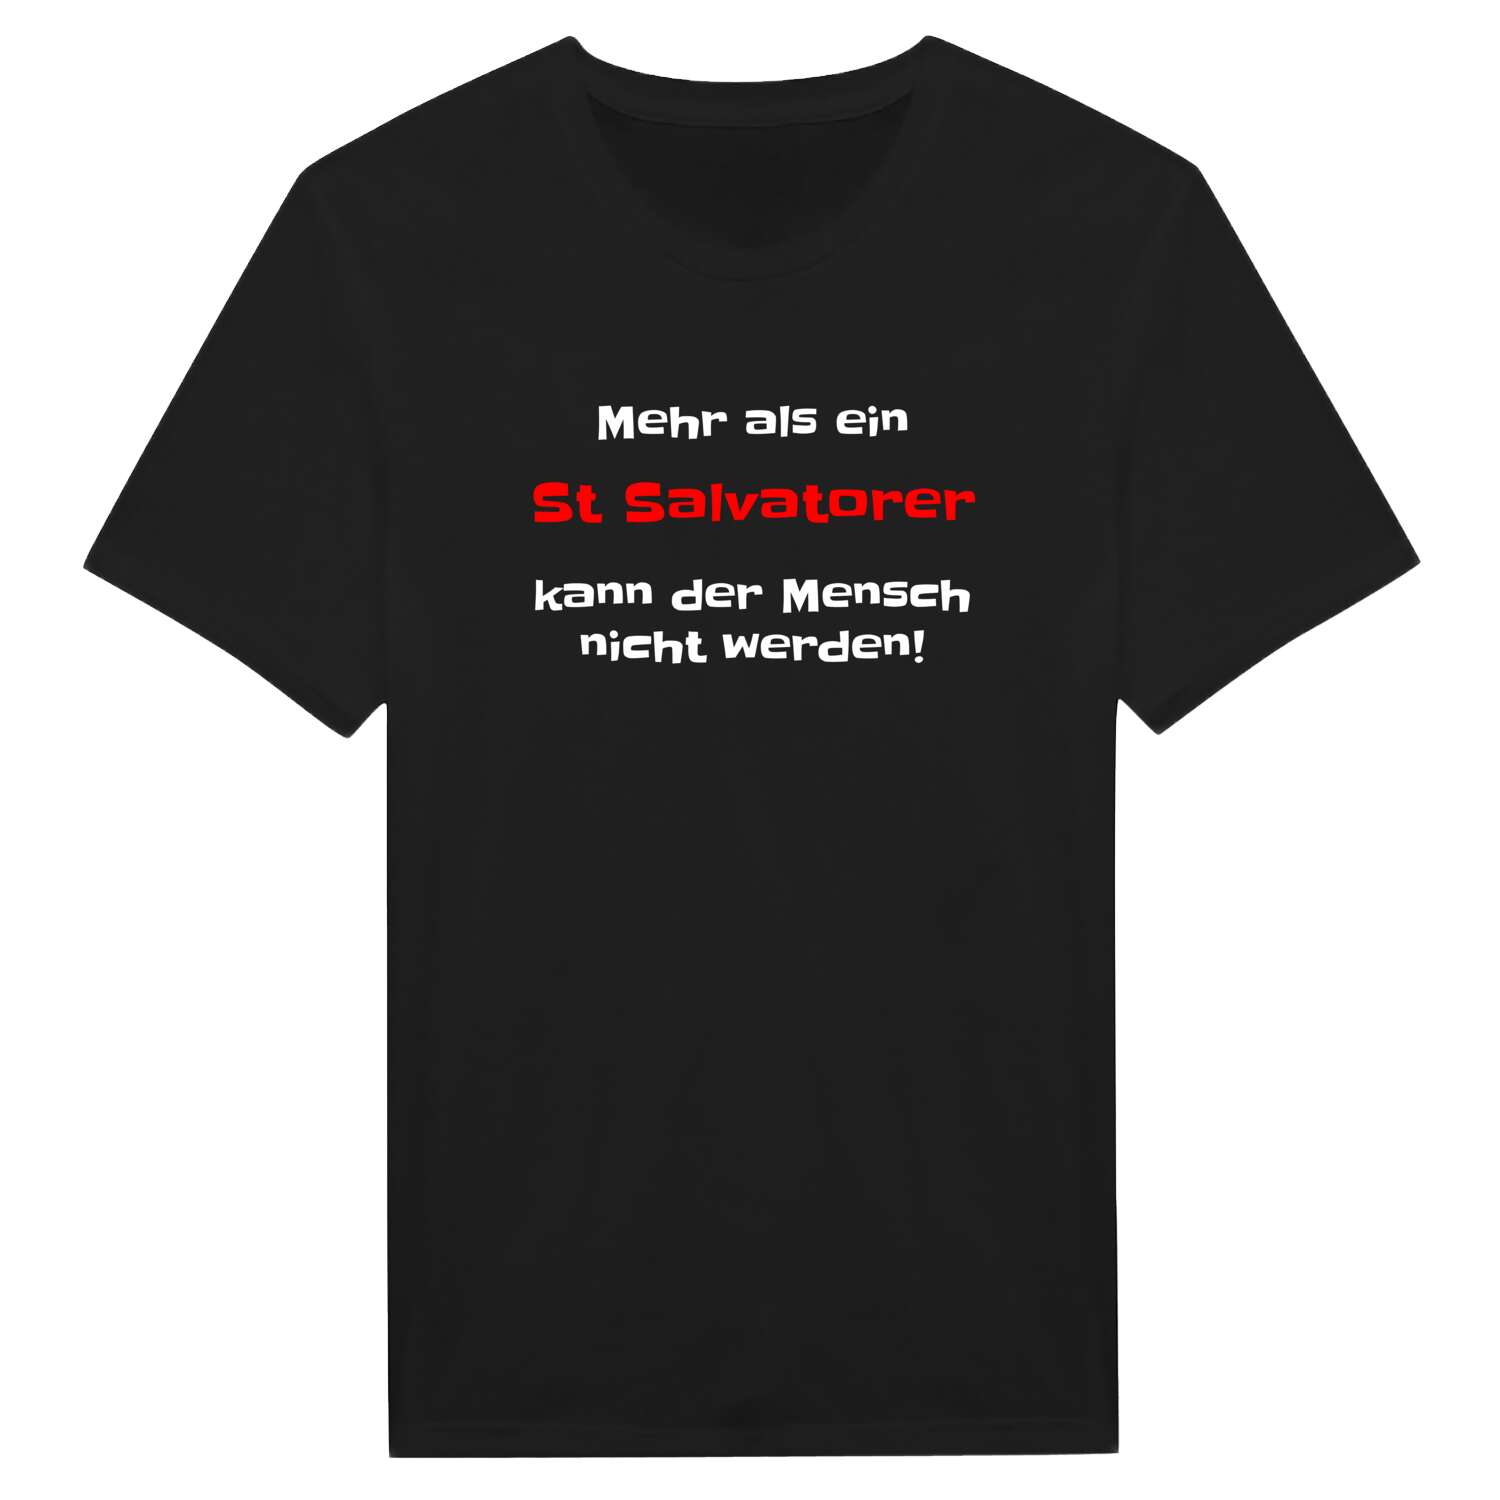 St Salvator T-Shirt »Mehr als ein«